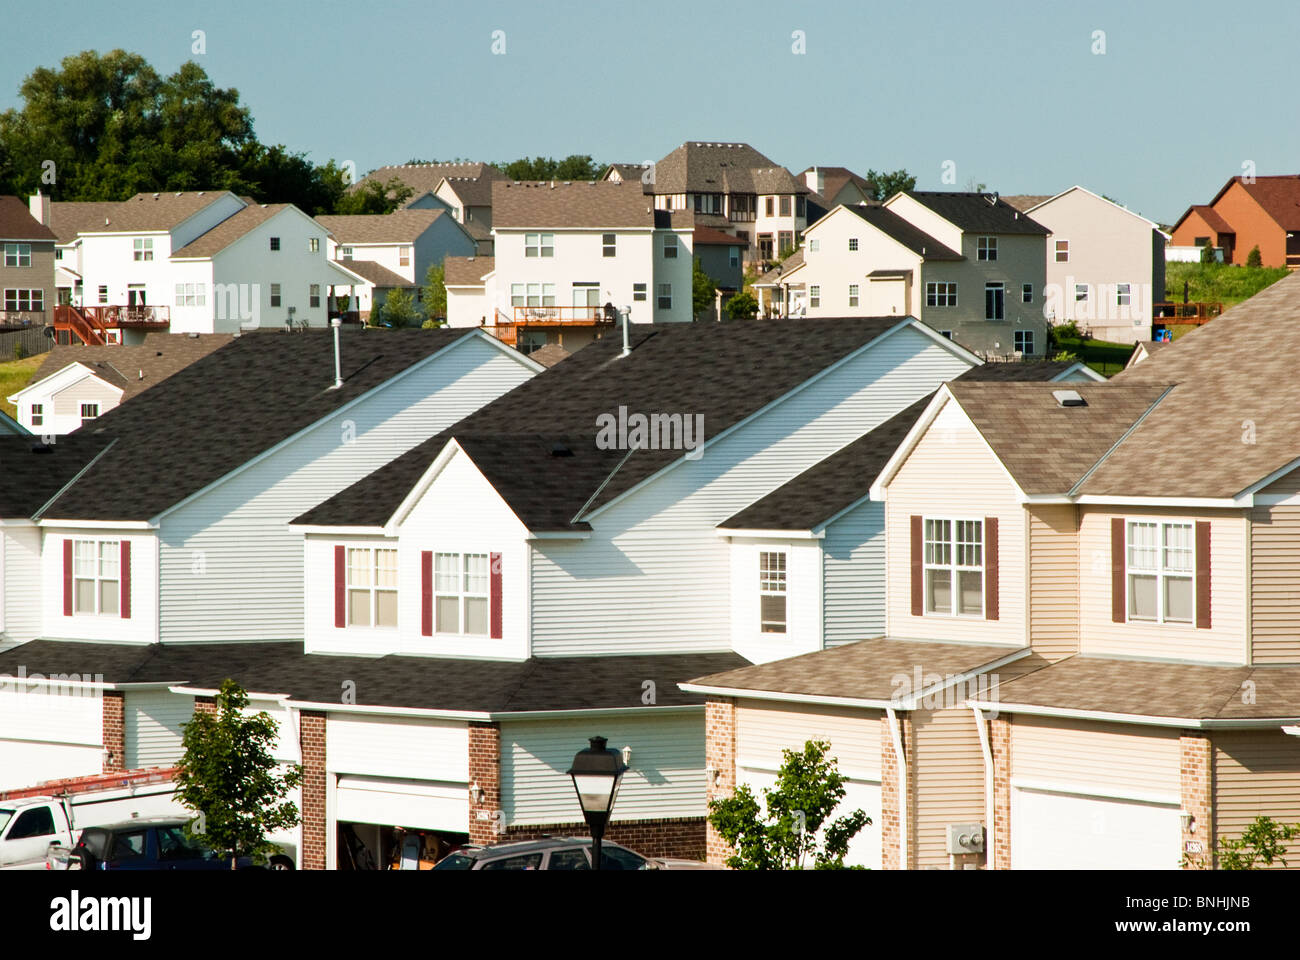 Blick auf mehrere Familien Villa in einem Vorort. Einfamilienhäuser sind im Hintergrund zu sehen. Stockfoto